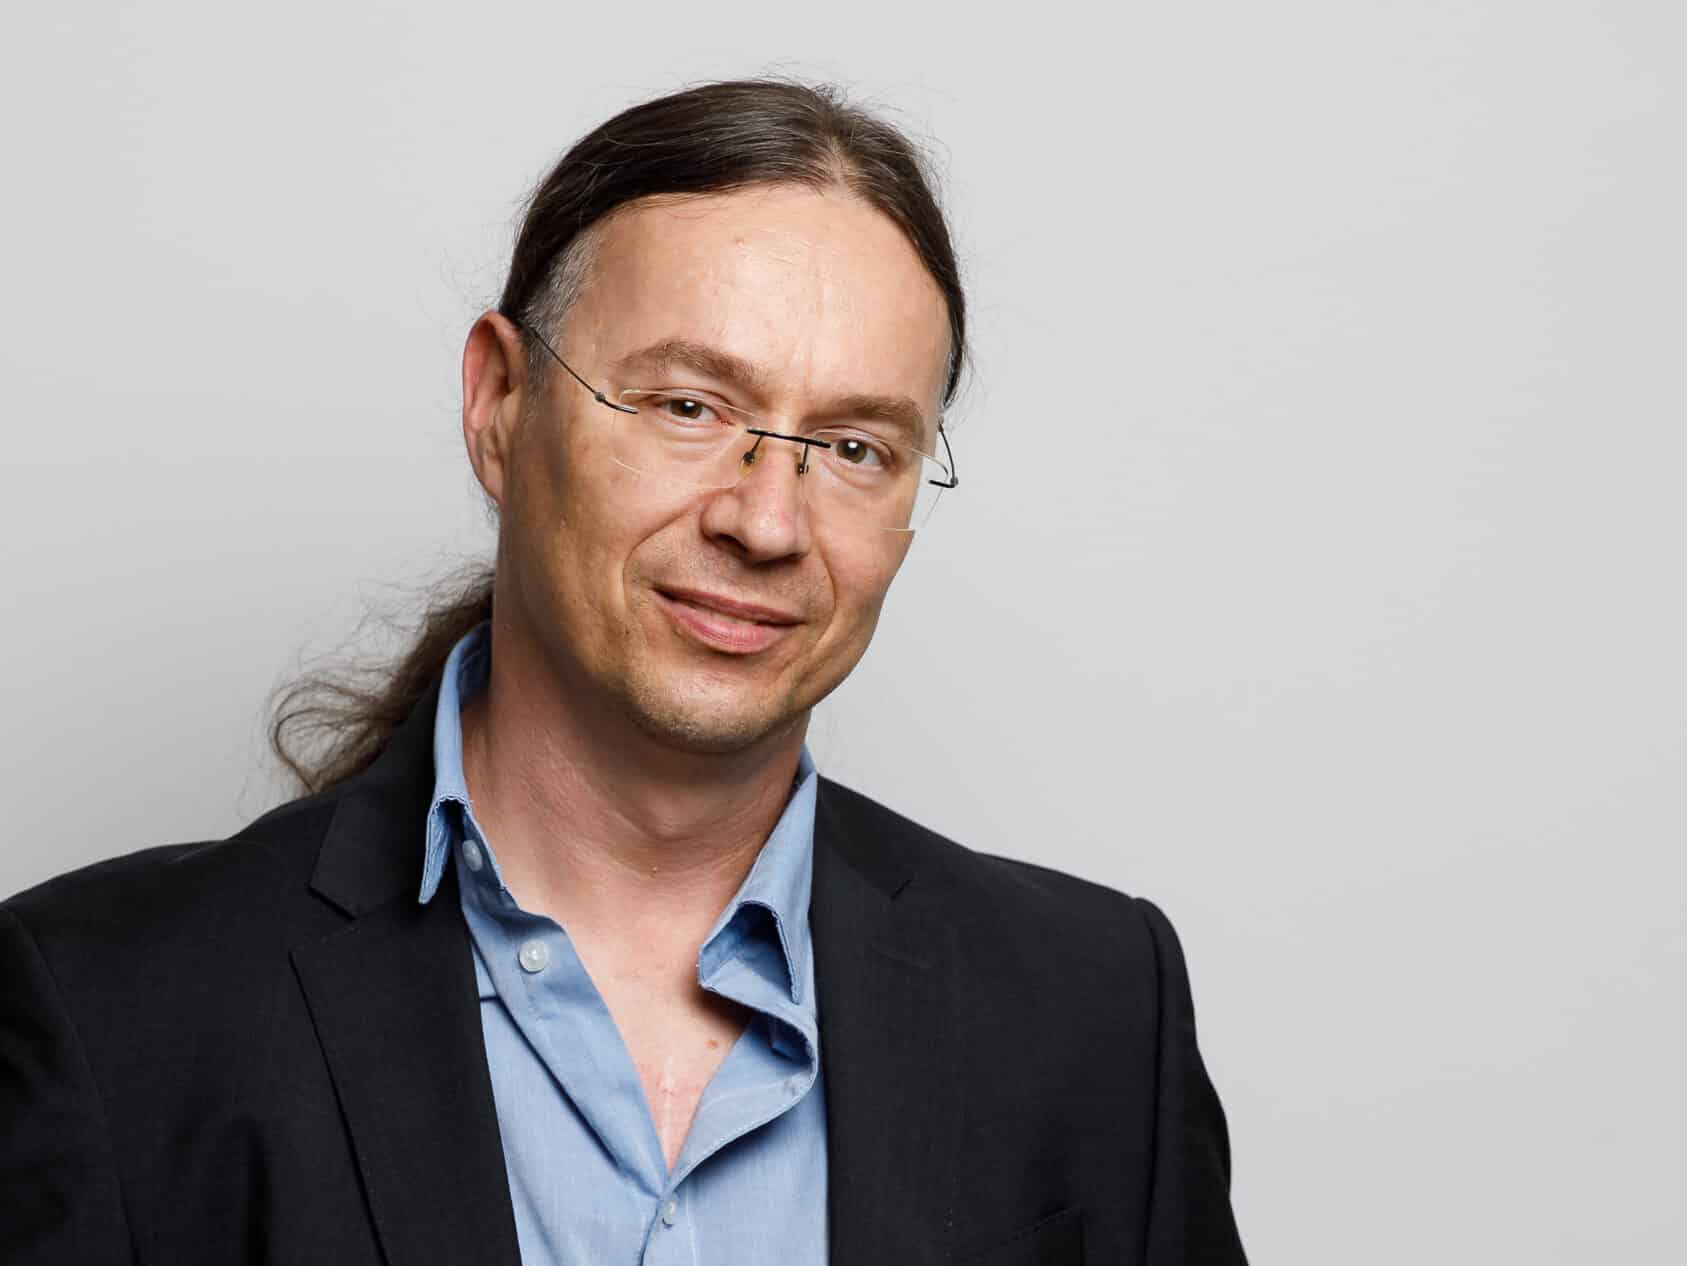 Dr. Thomas Schreiber, diplomierter Webentwickler, SEO-Experte und Trainer am Wifi Graz